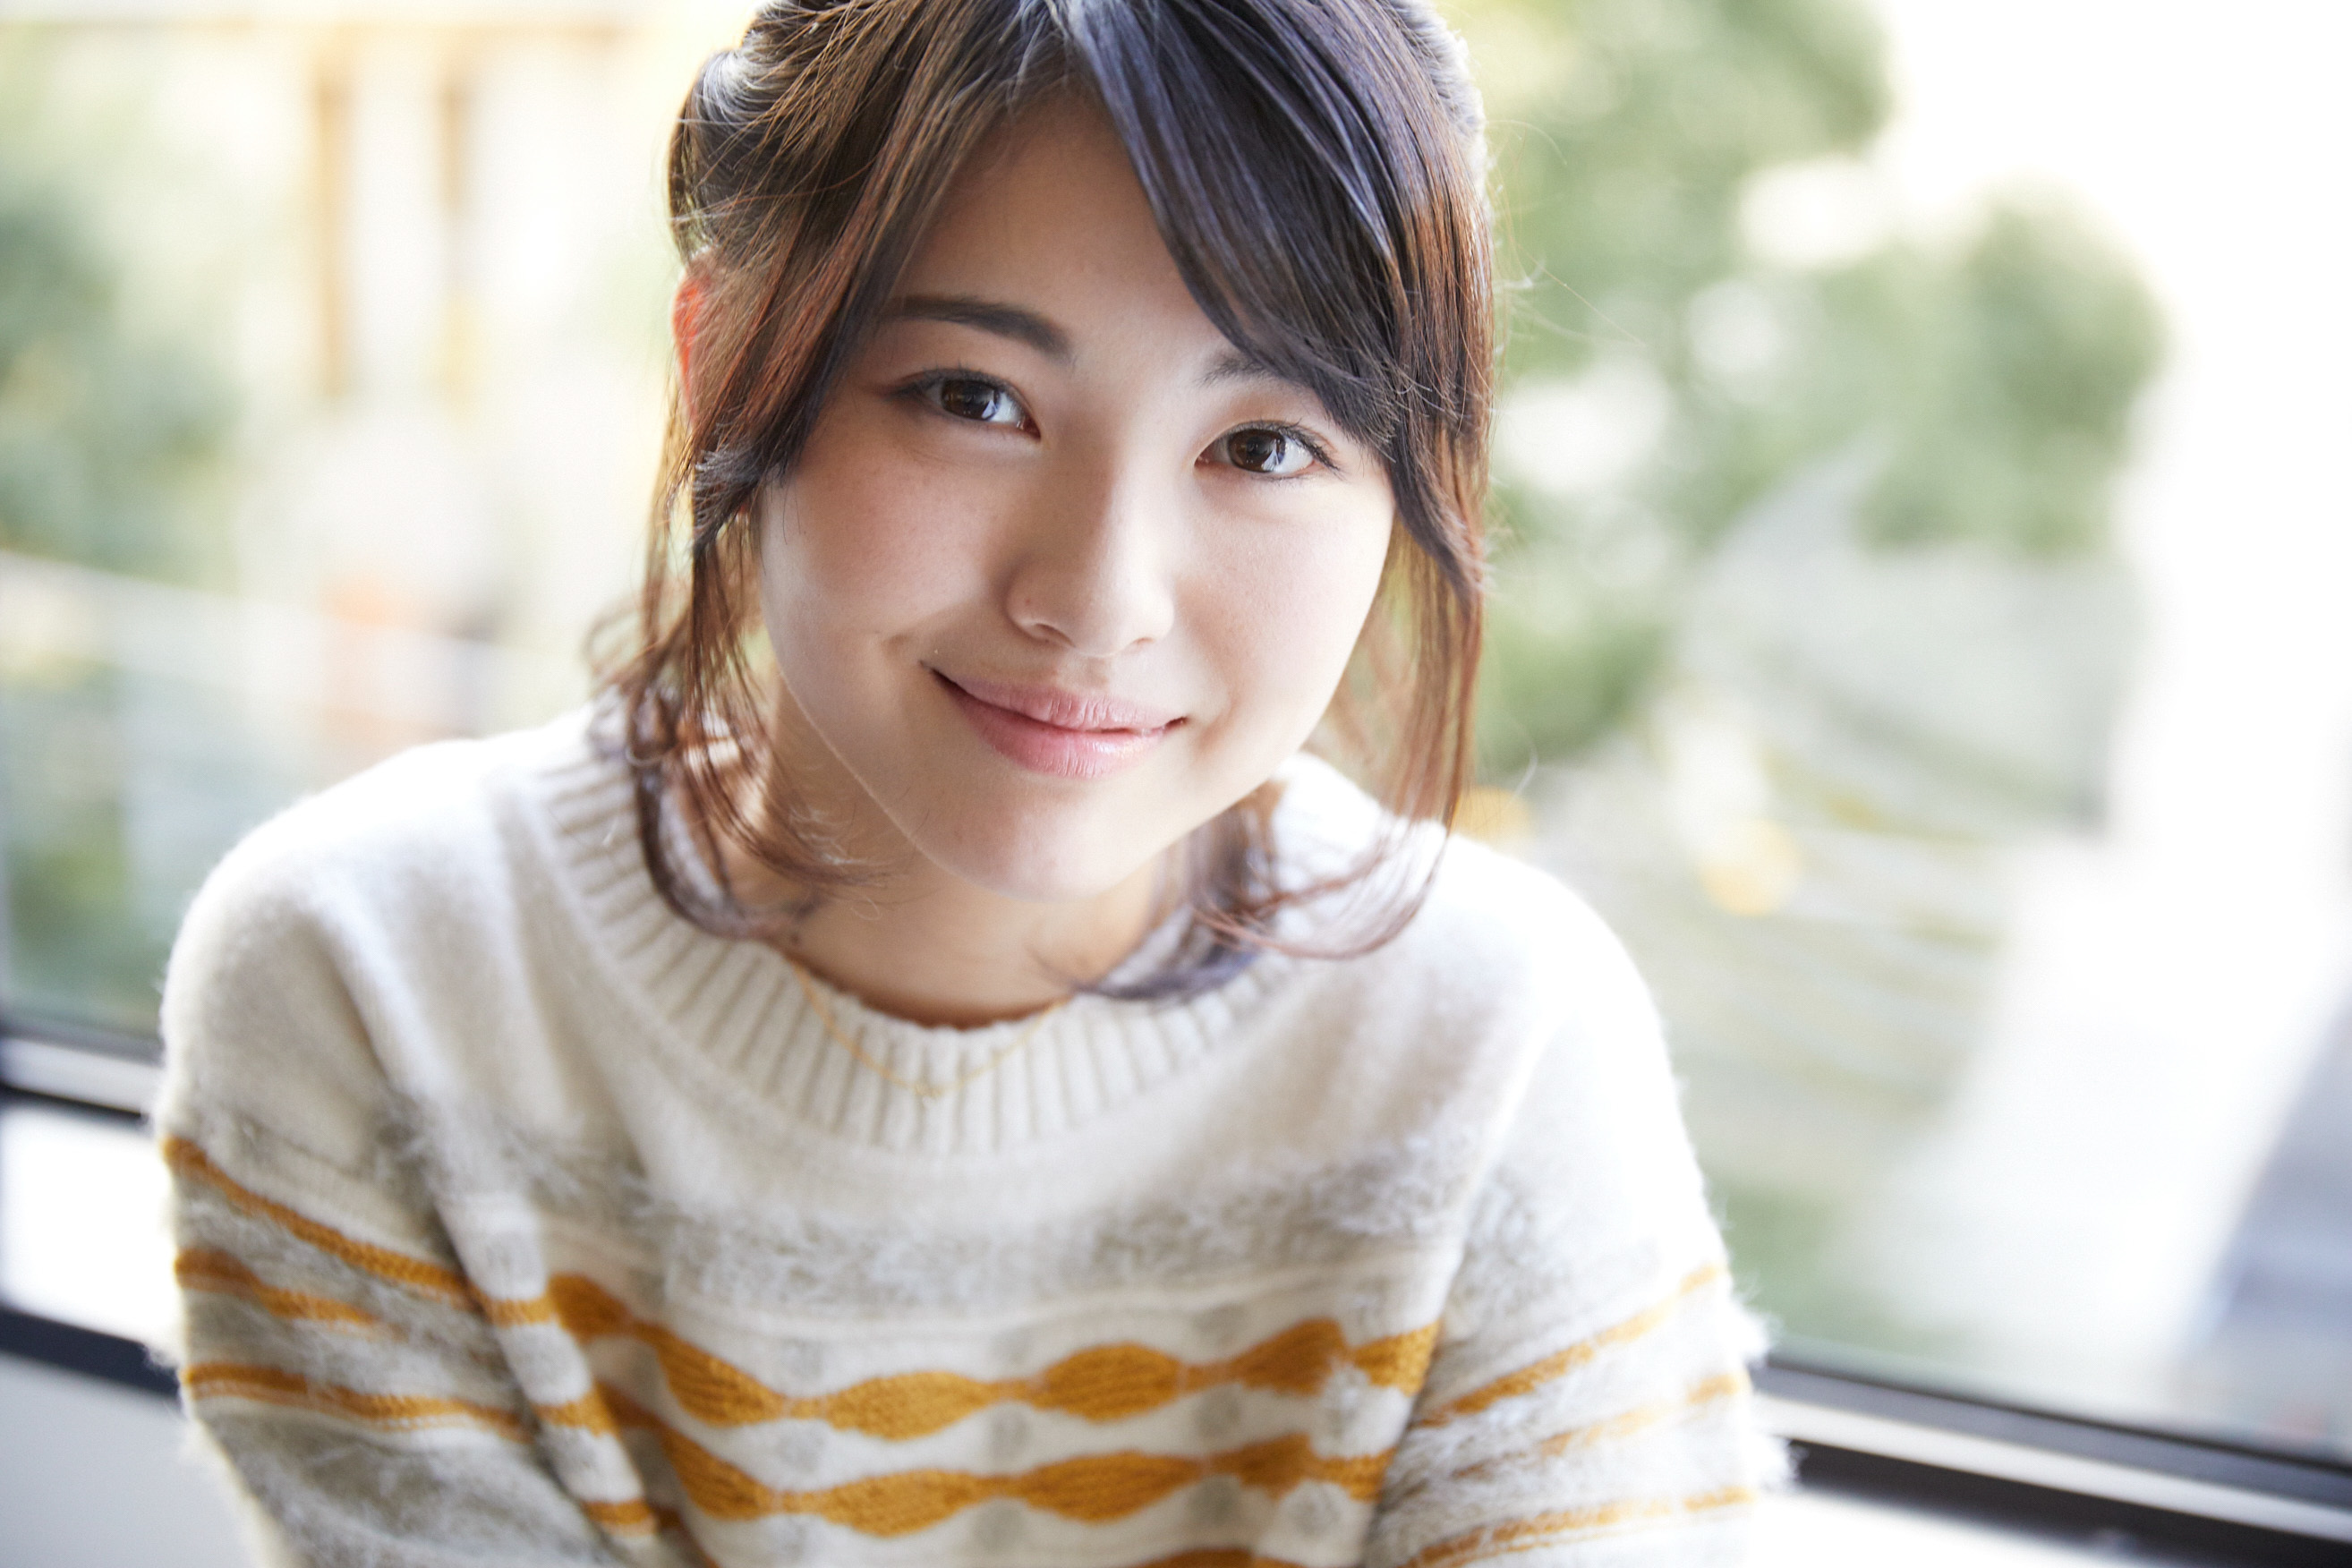 浜辺美波インタビュー 原作モノ にこだわる16歳の女優は 咲 Saki 実写化にどう臨んだのか Spice エンタメ特化型情報メディア スパイス